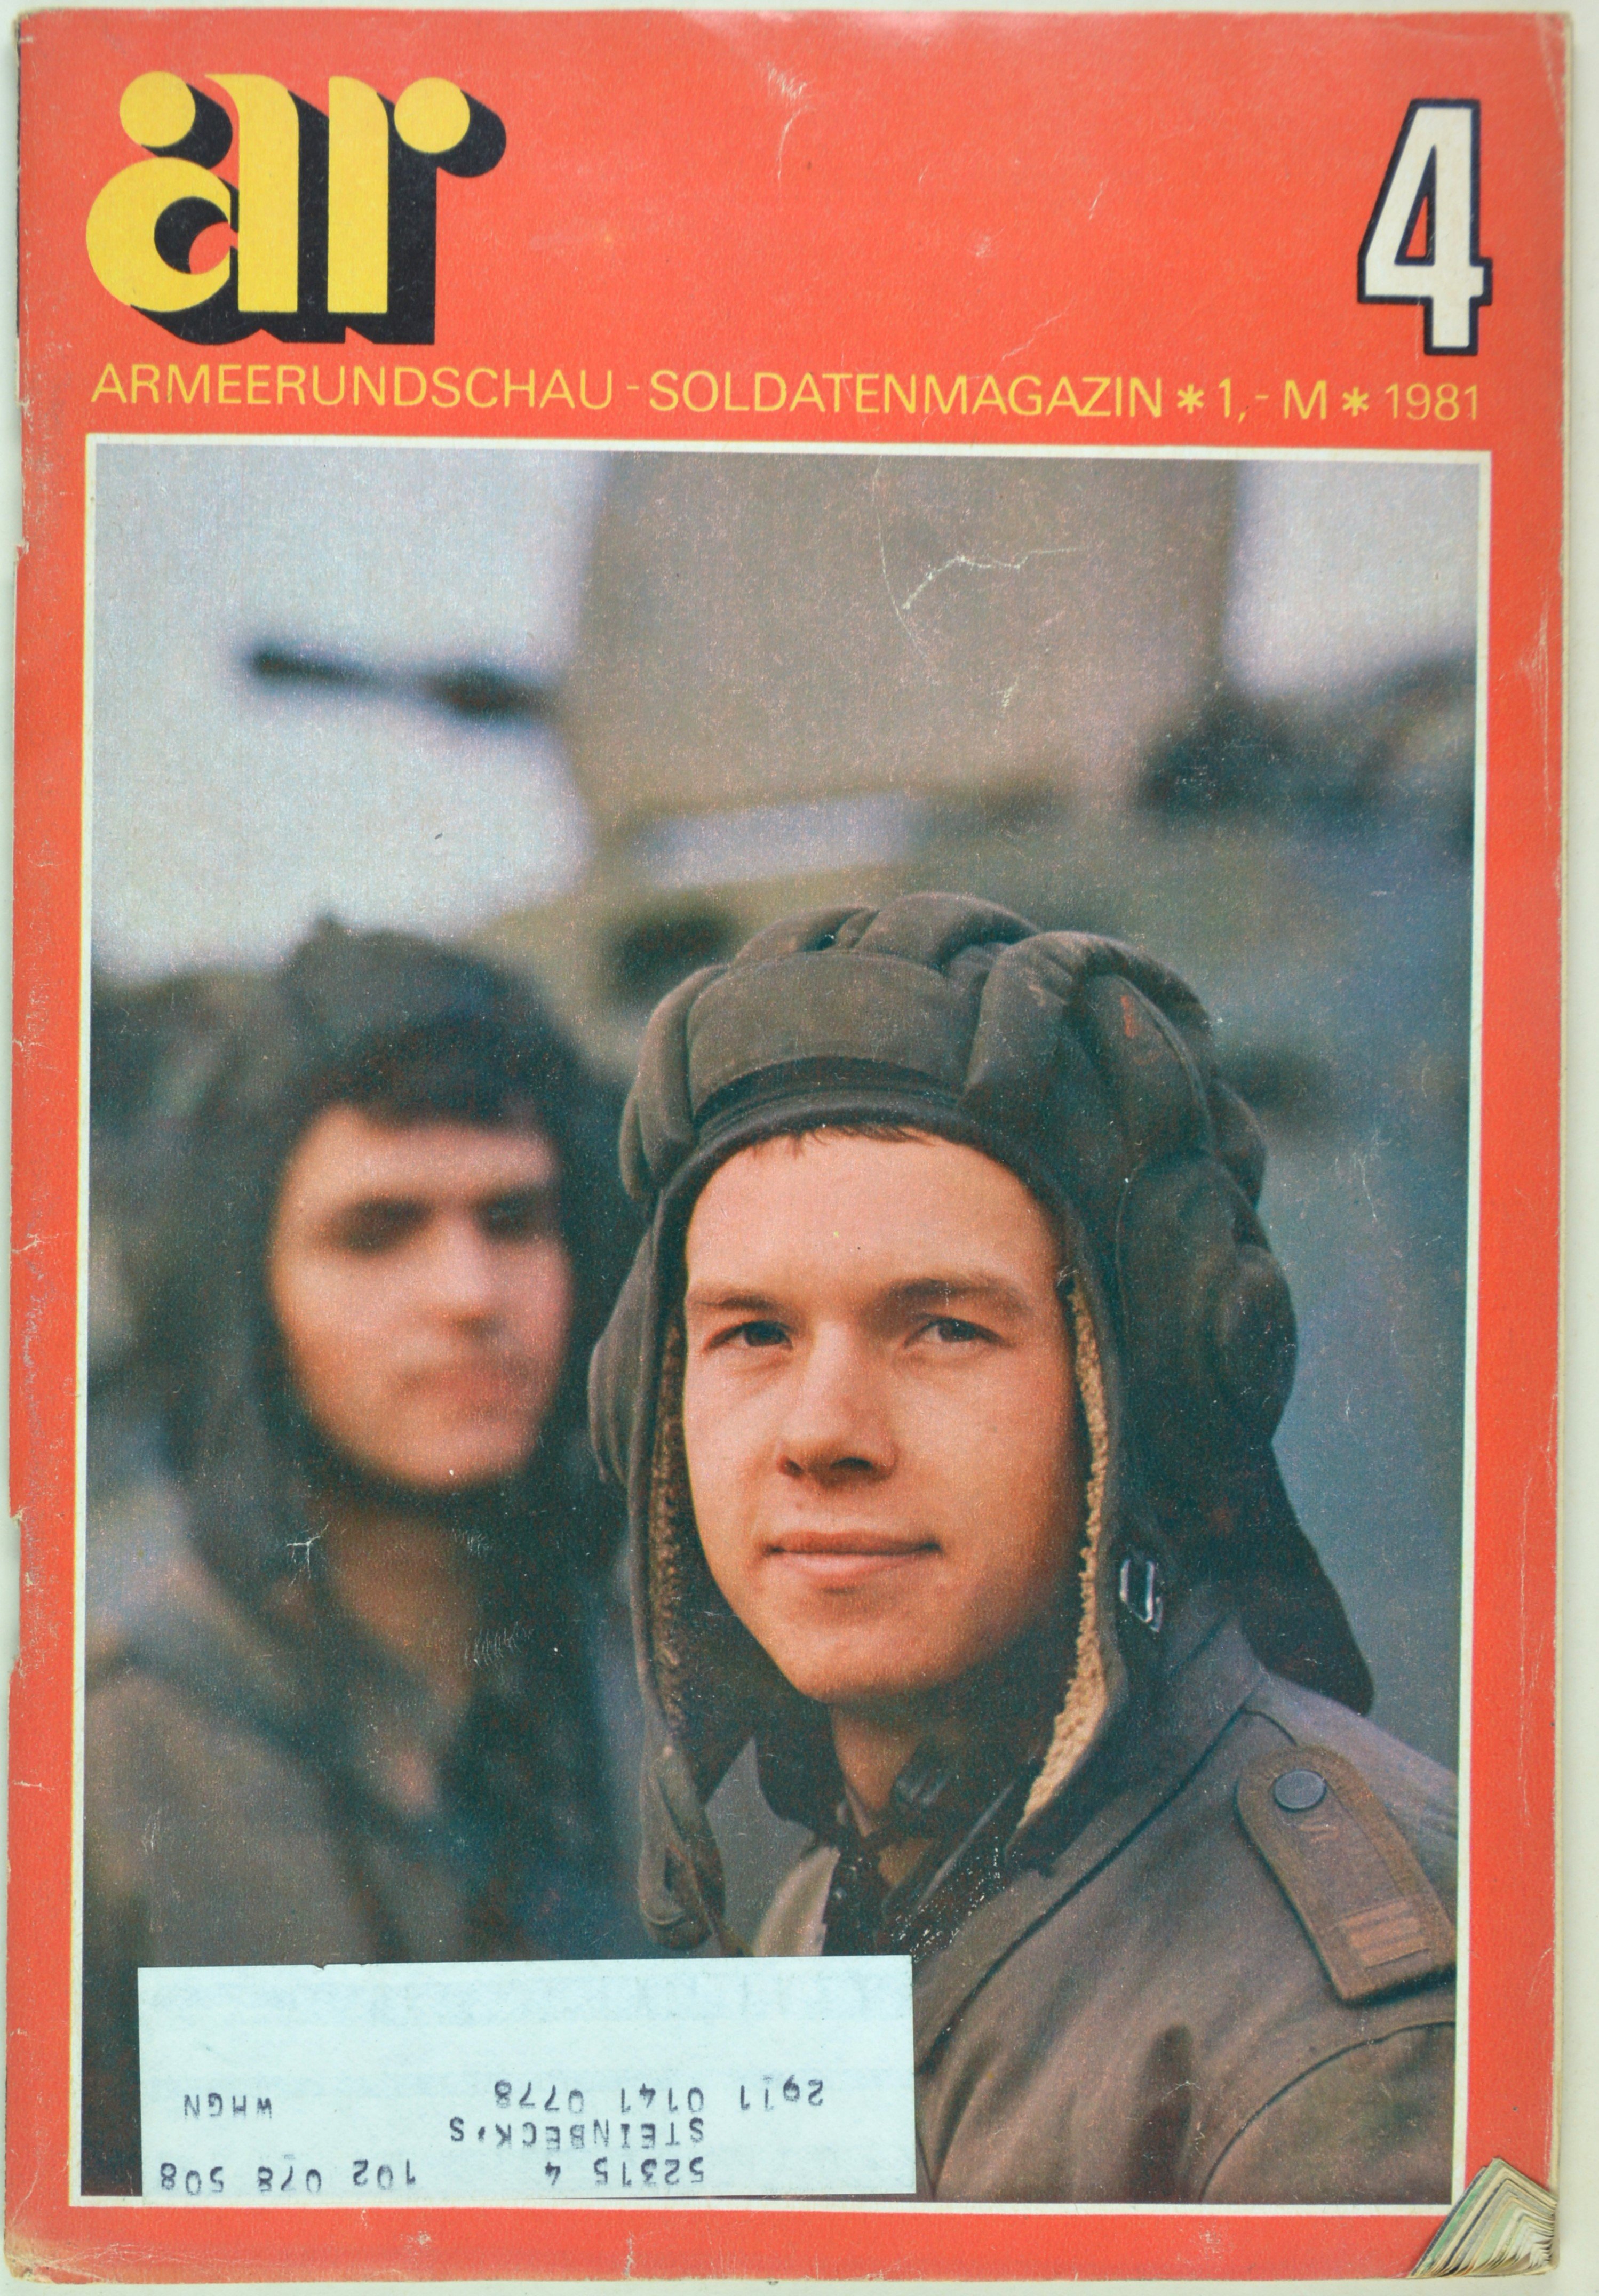 Armeerundschau - Soldatenmagazin (1981), Heft 4 (DDR Geschichtsmuseum im Dokumentationszentrum Perleberg CC BY-SA)